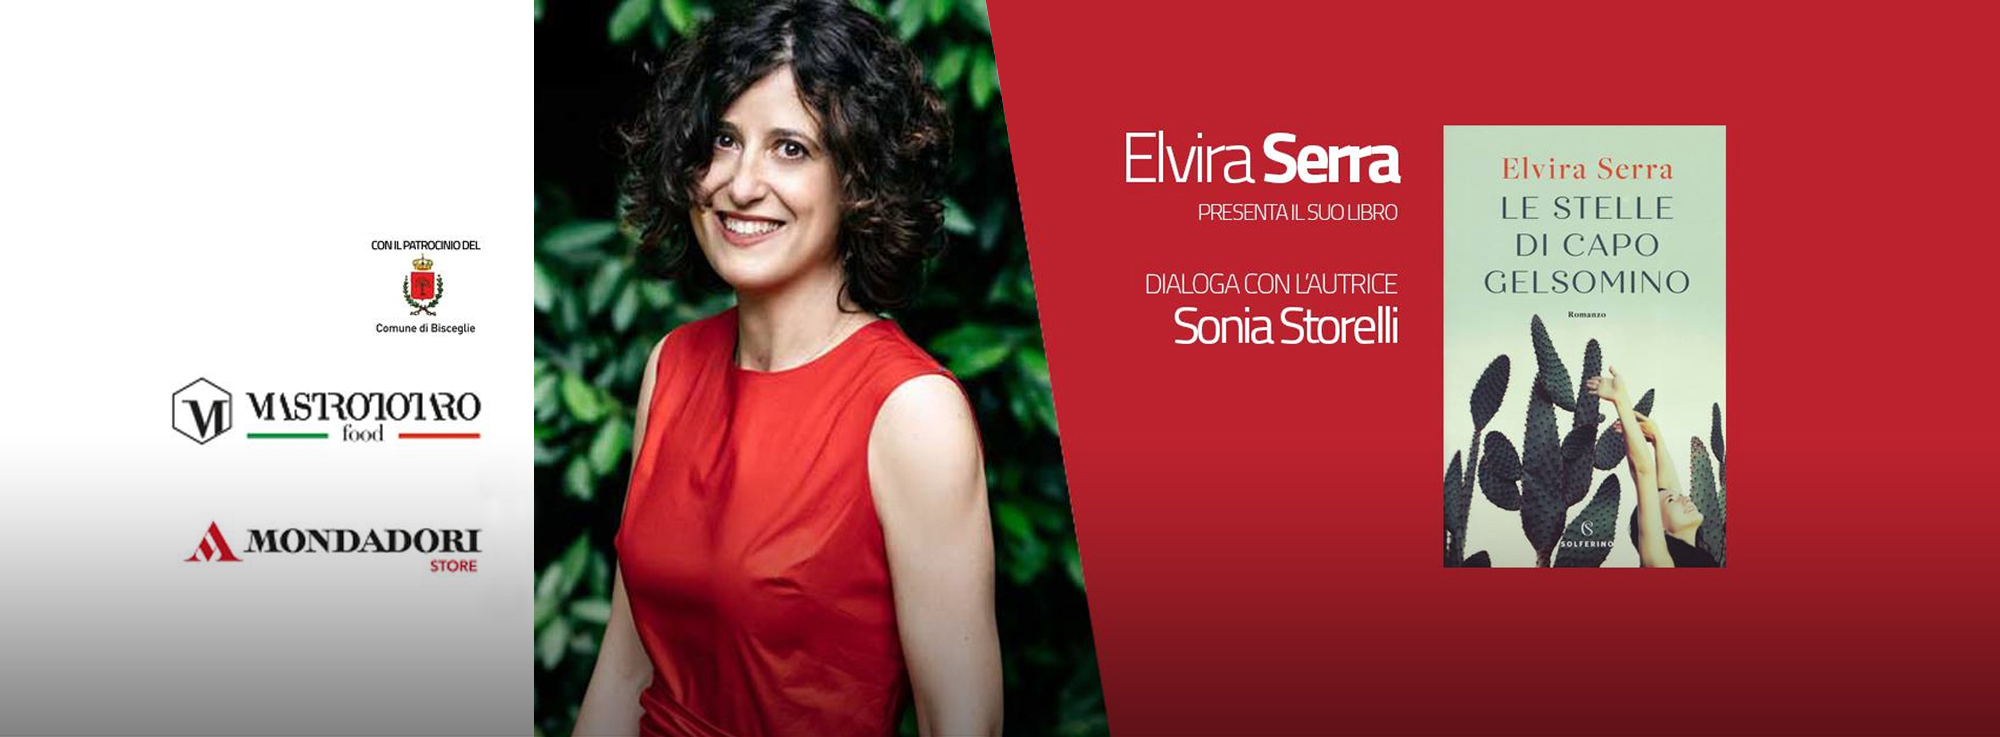 Bisceglie: Presentazione libro di Elvira Serra